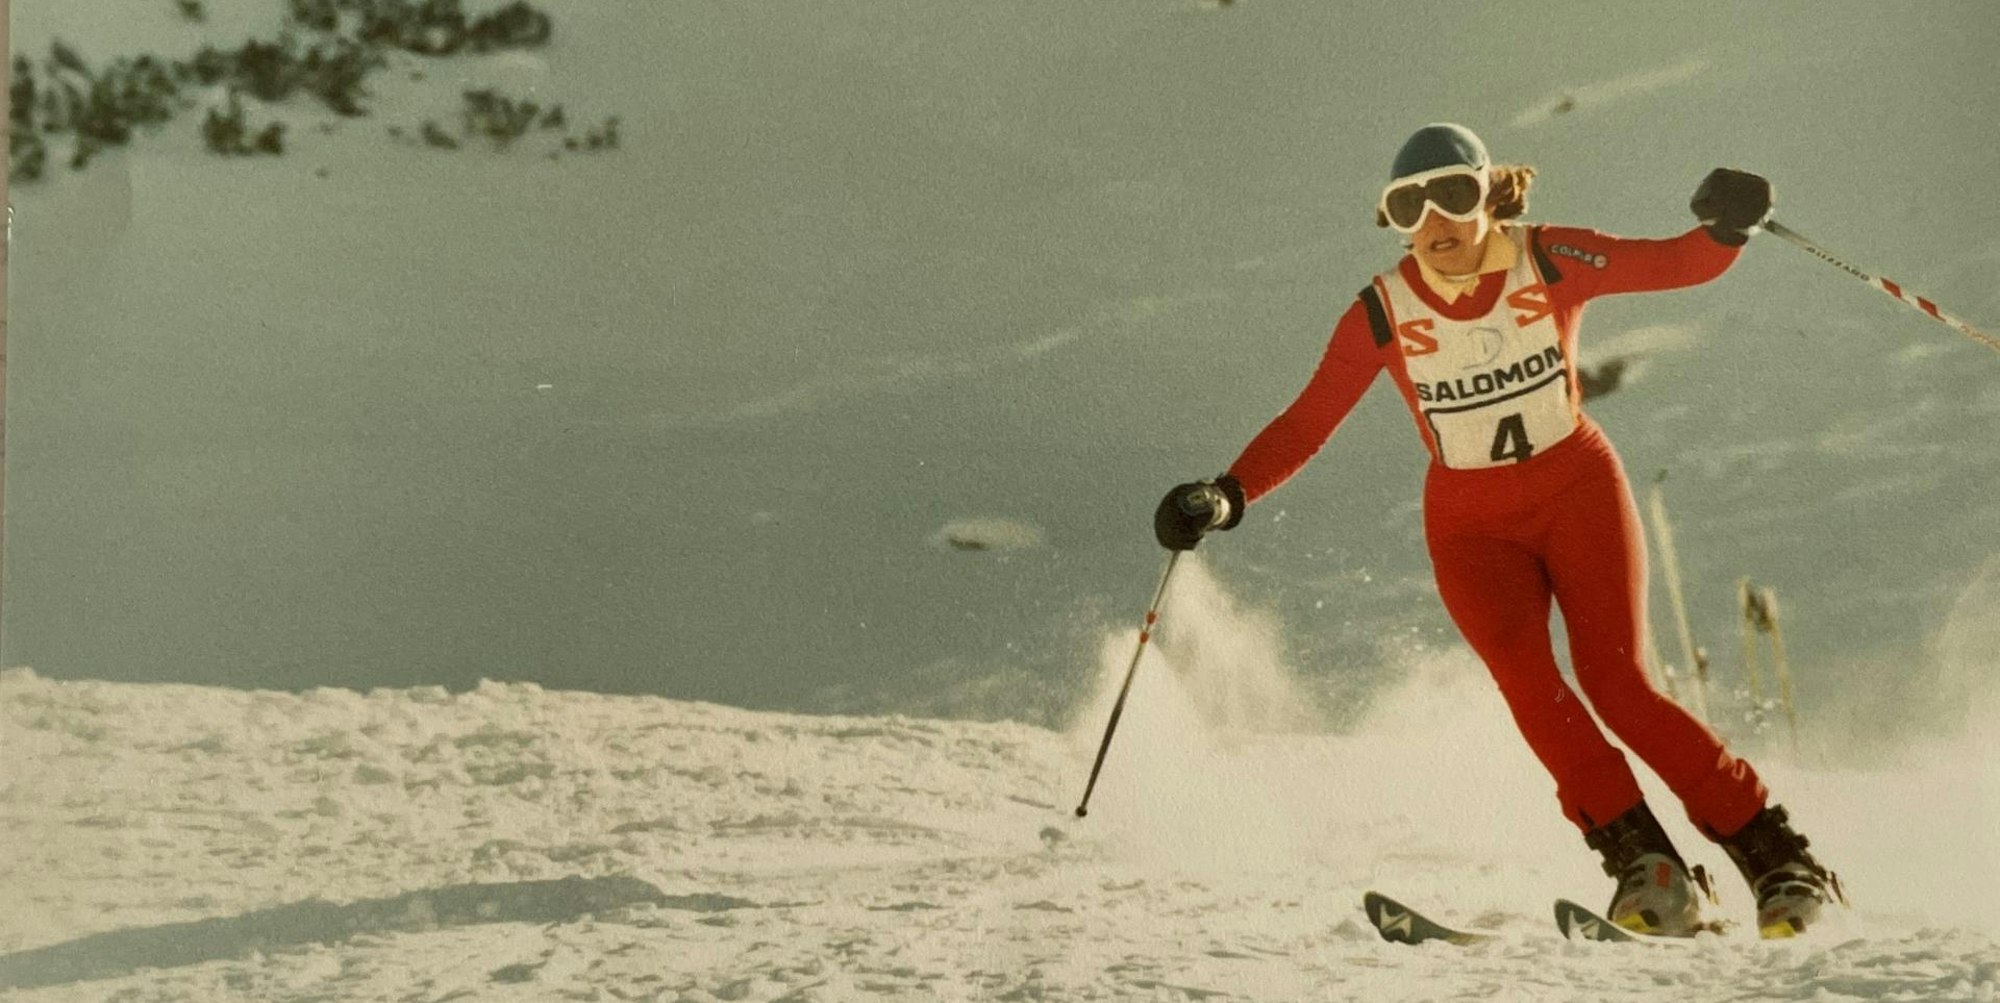 Karin Madel entdeckte bereits in ihrer Kindheit die Leidenschaft für den Skisport. 